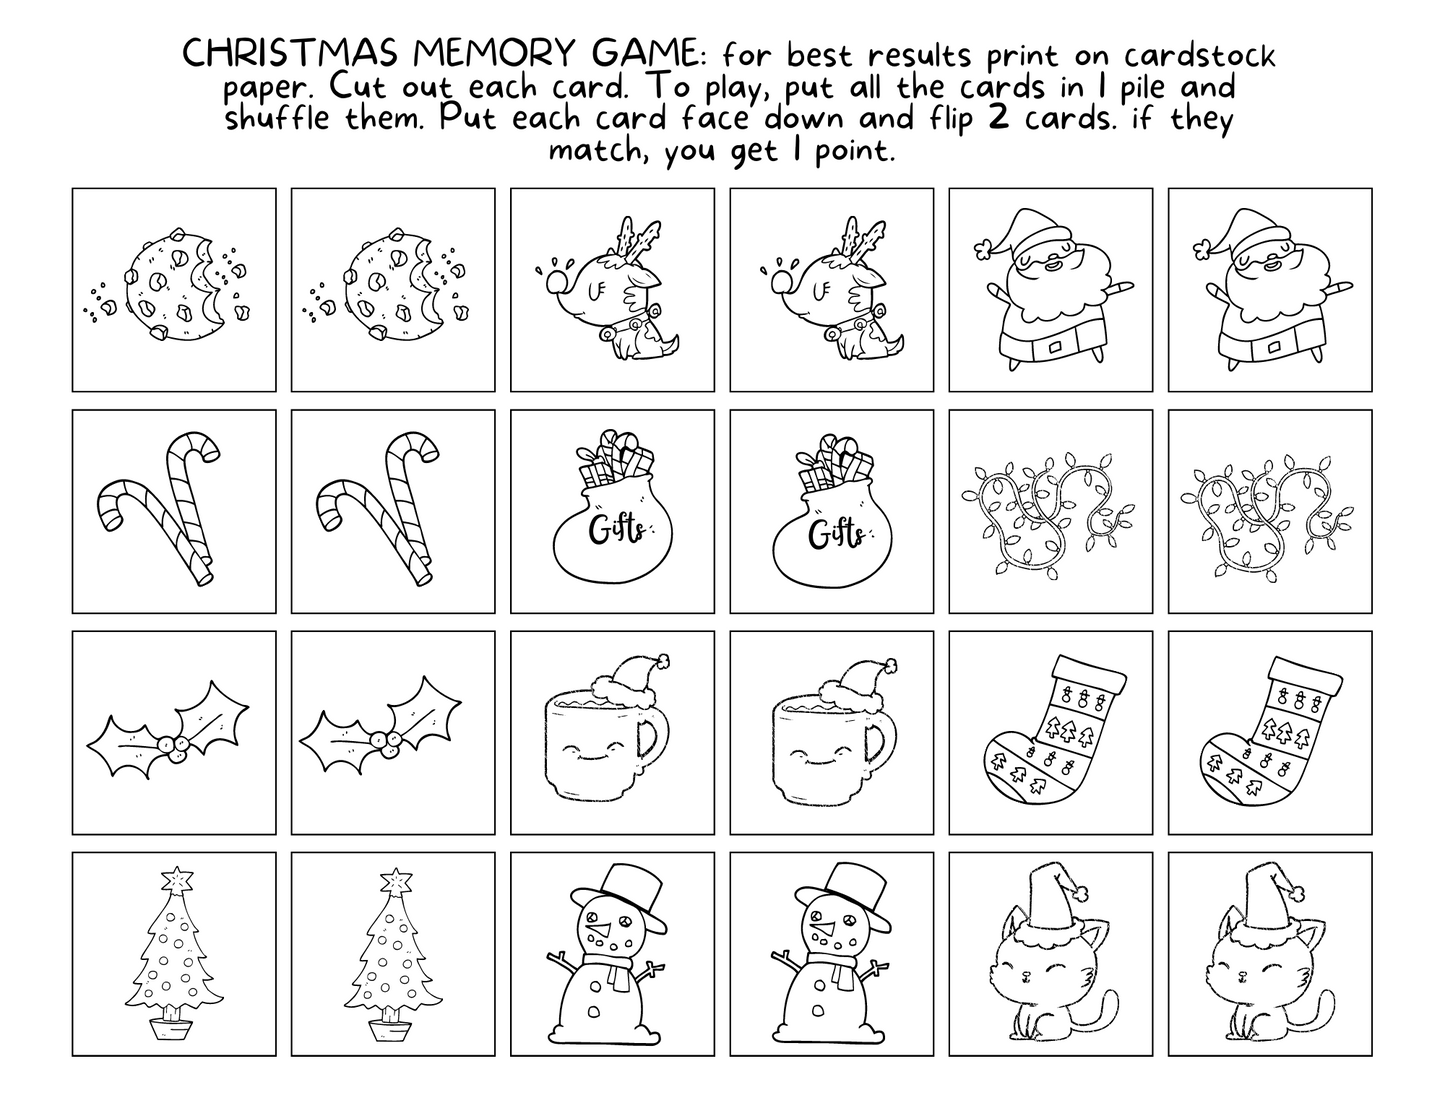 Fun Christmas Printable Bundle - 14 Pages